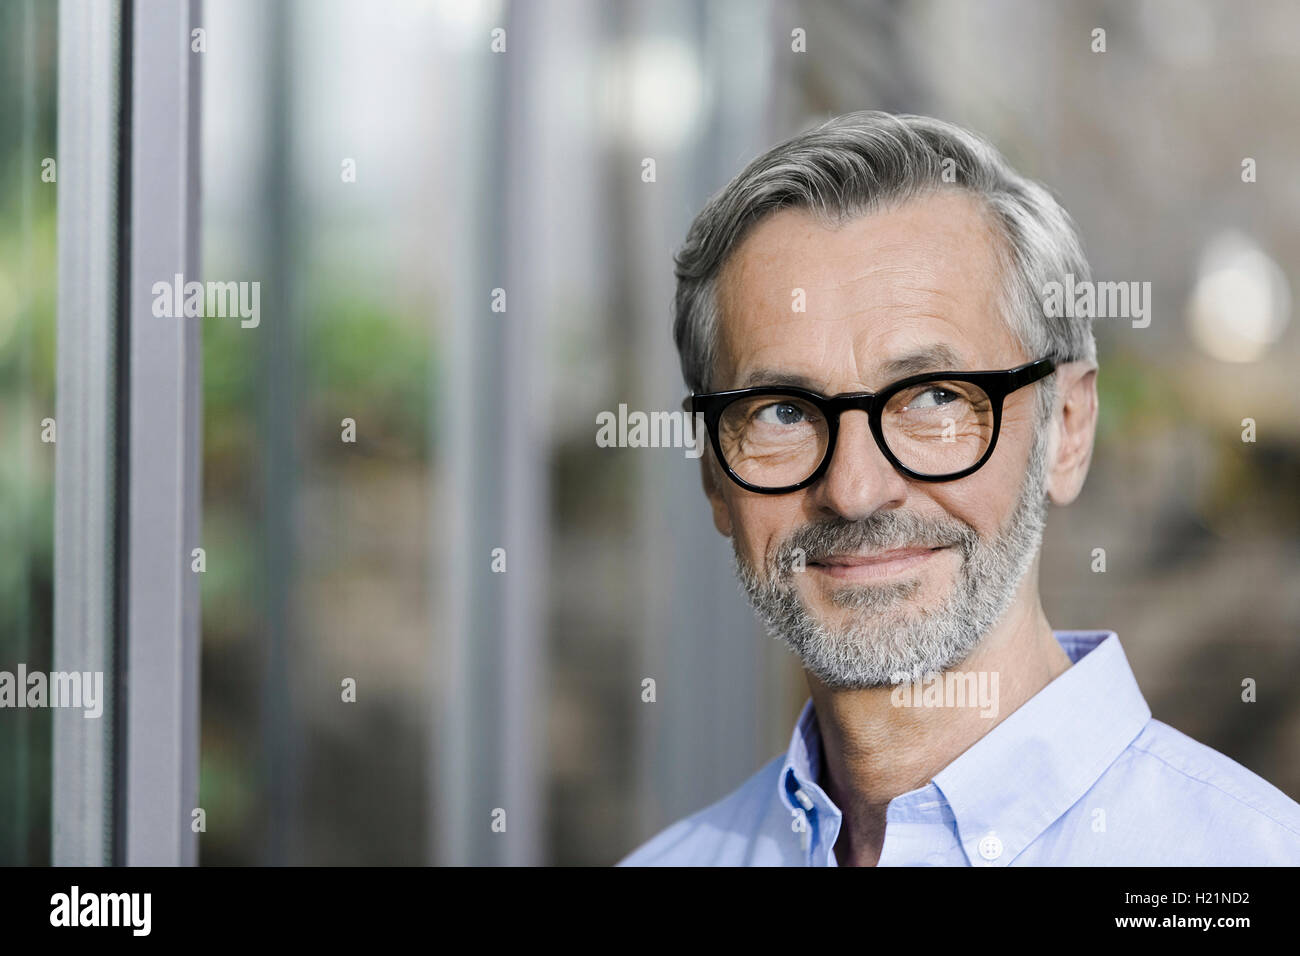 Portrait of smiling man avec barbe et cheveux gris portant des lunettes Banque D'Images